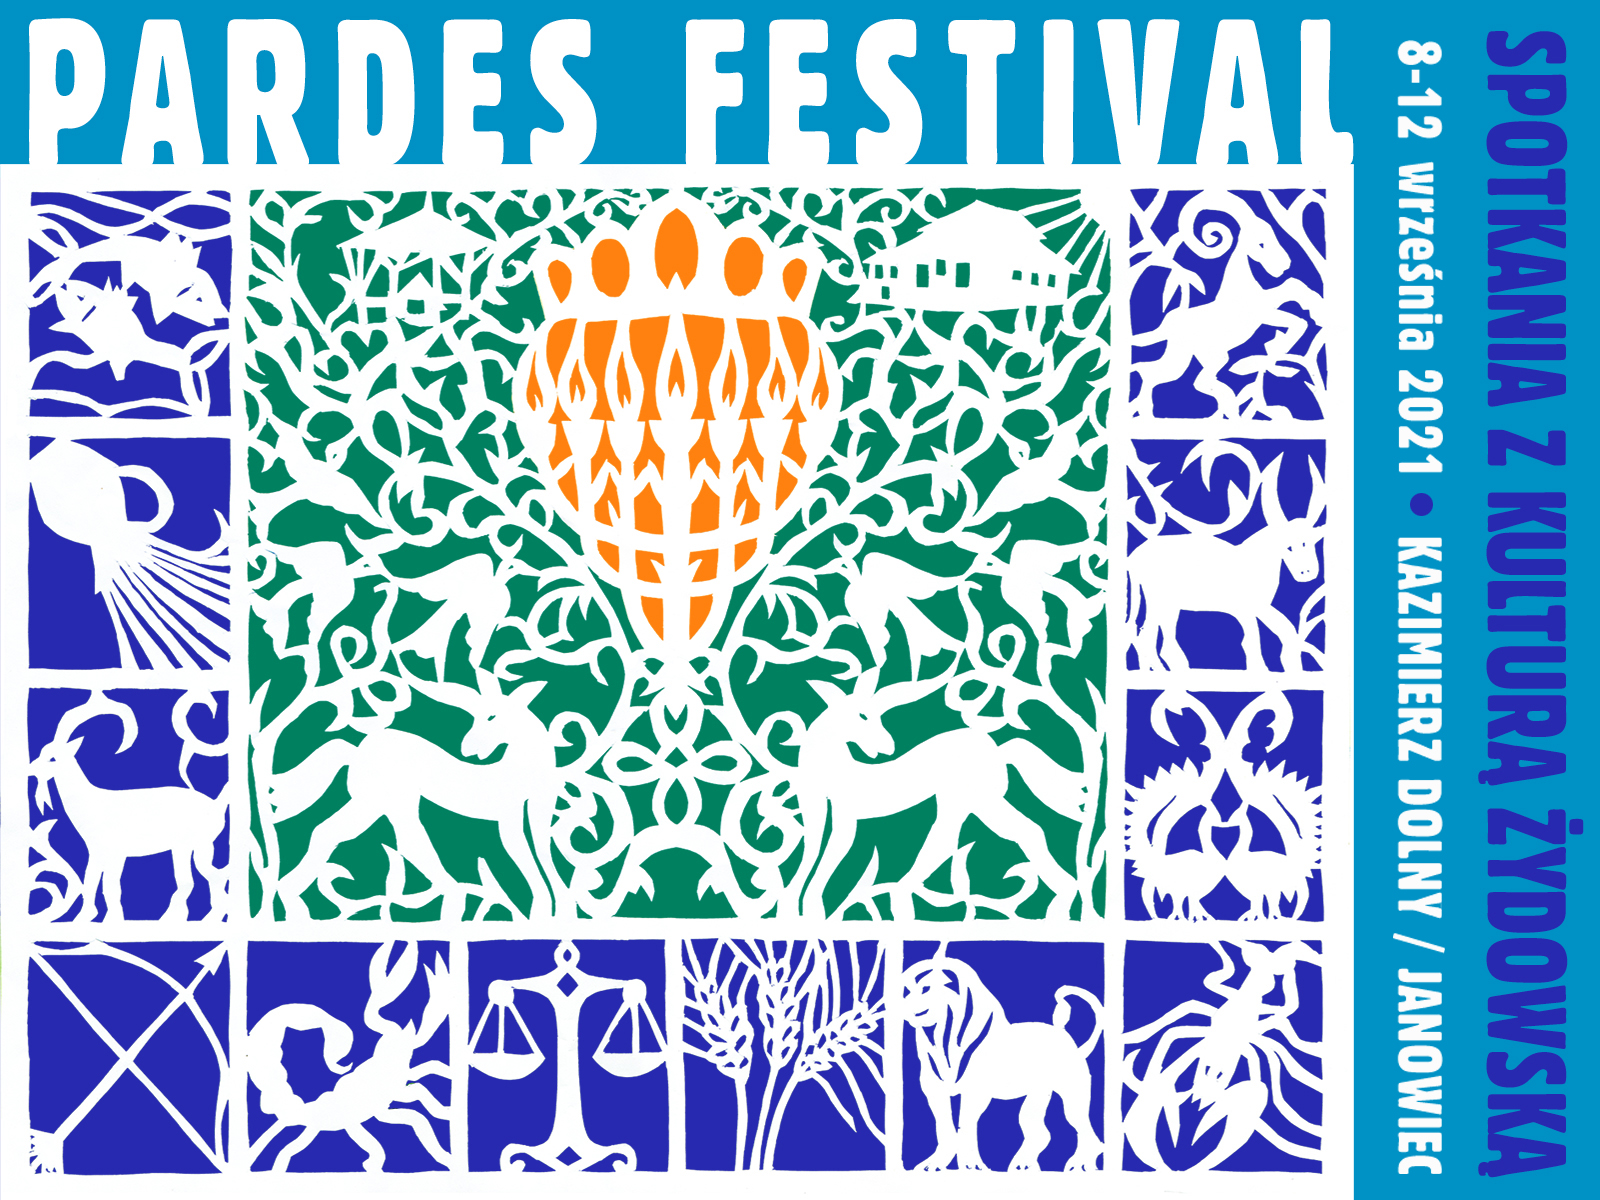 Na obrazie widzimy grafikę promocyjną festiwalu Pardes. 